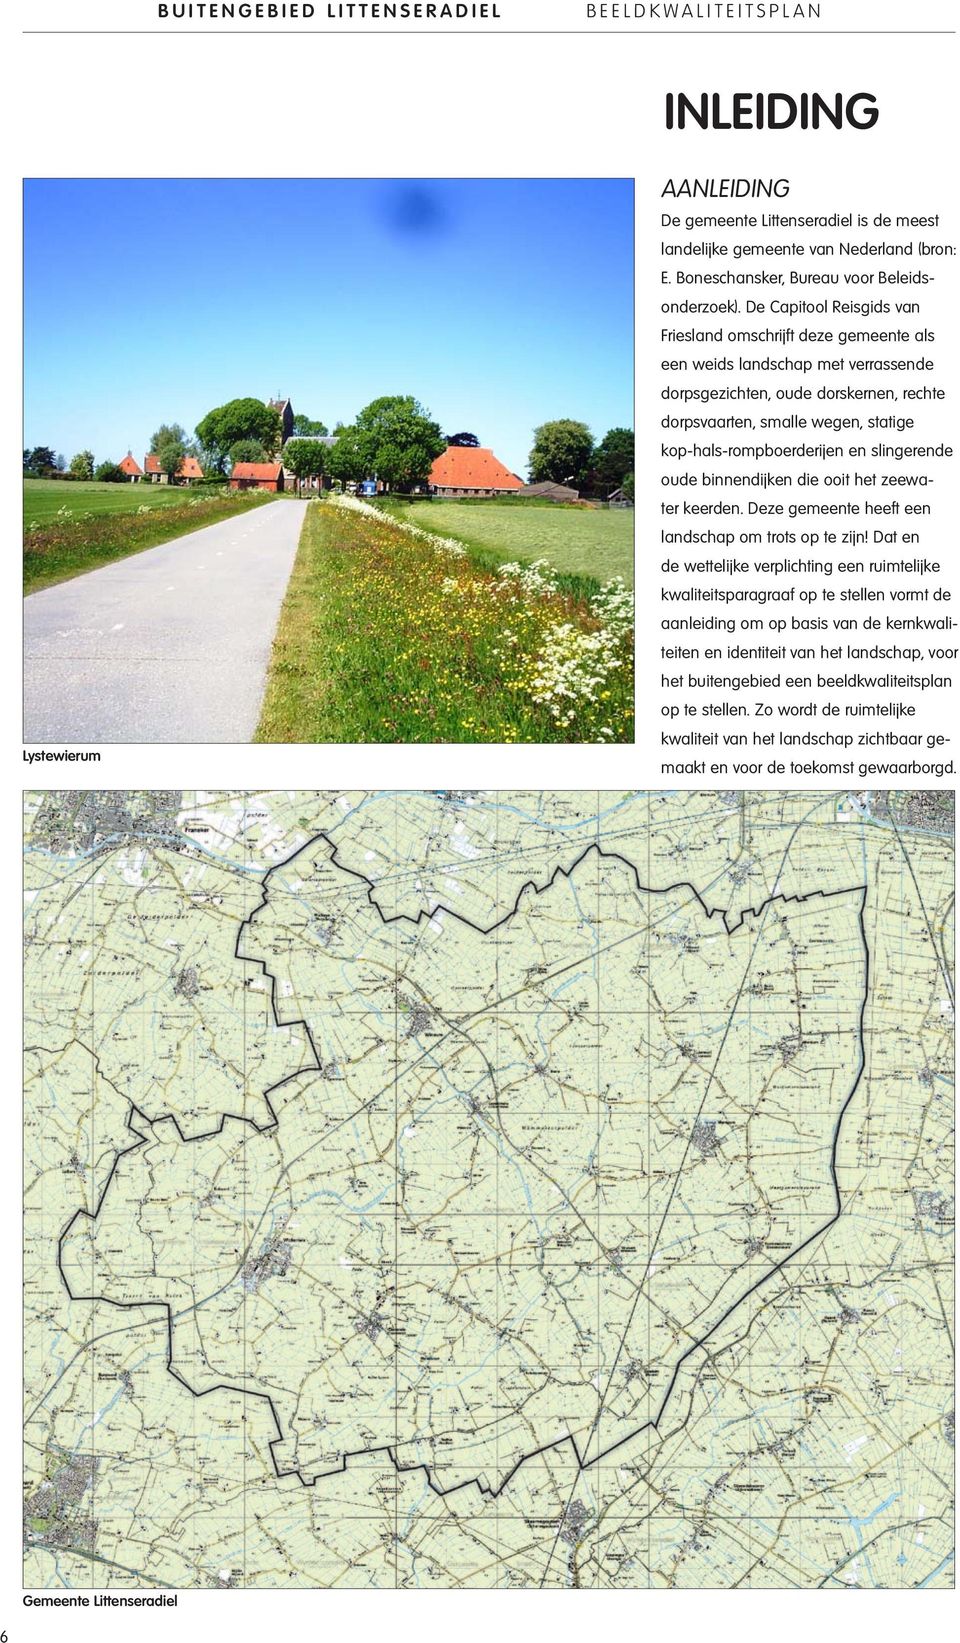 De Capitool Reisgids van Friesland omschrijft deze gemeente als een weids landschap met verrassende dorpsgezichten, oude dorskernen, rechte dorpsvaarten, smalle wegen, statige